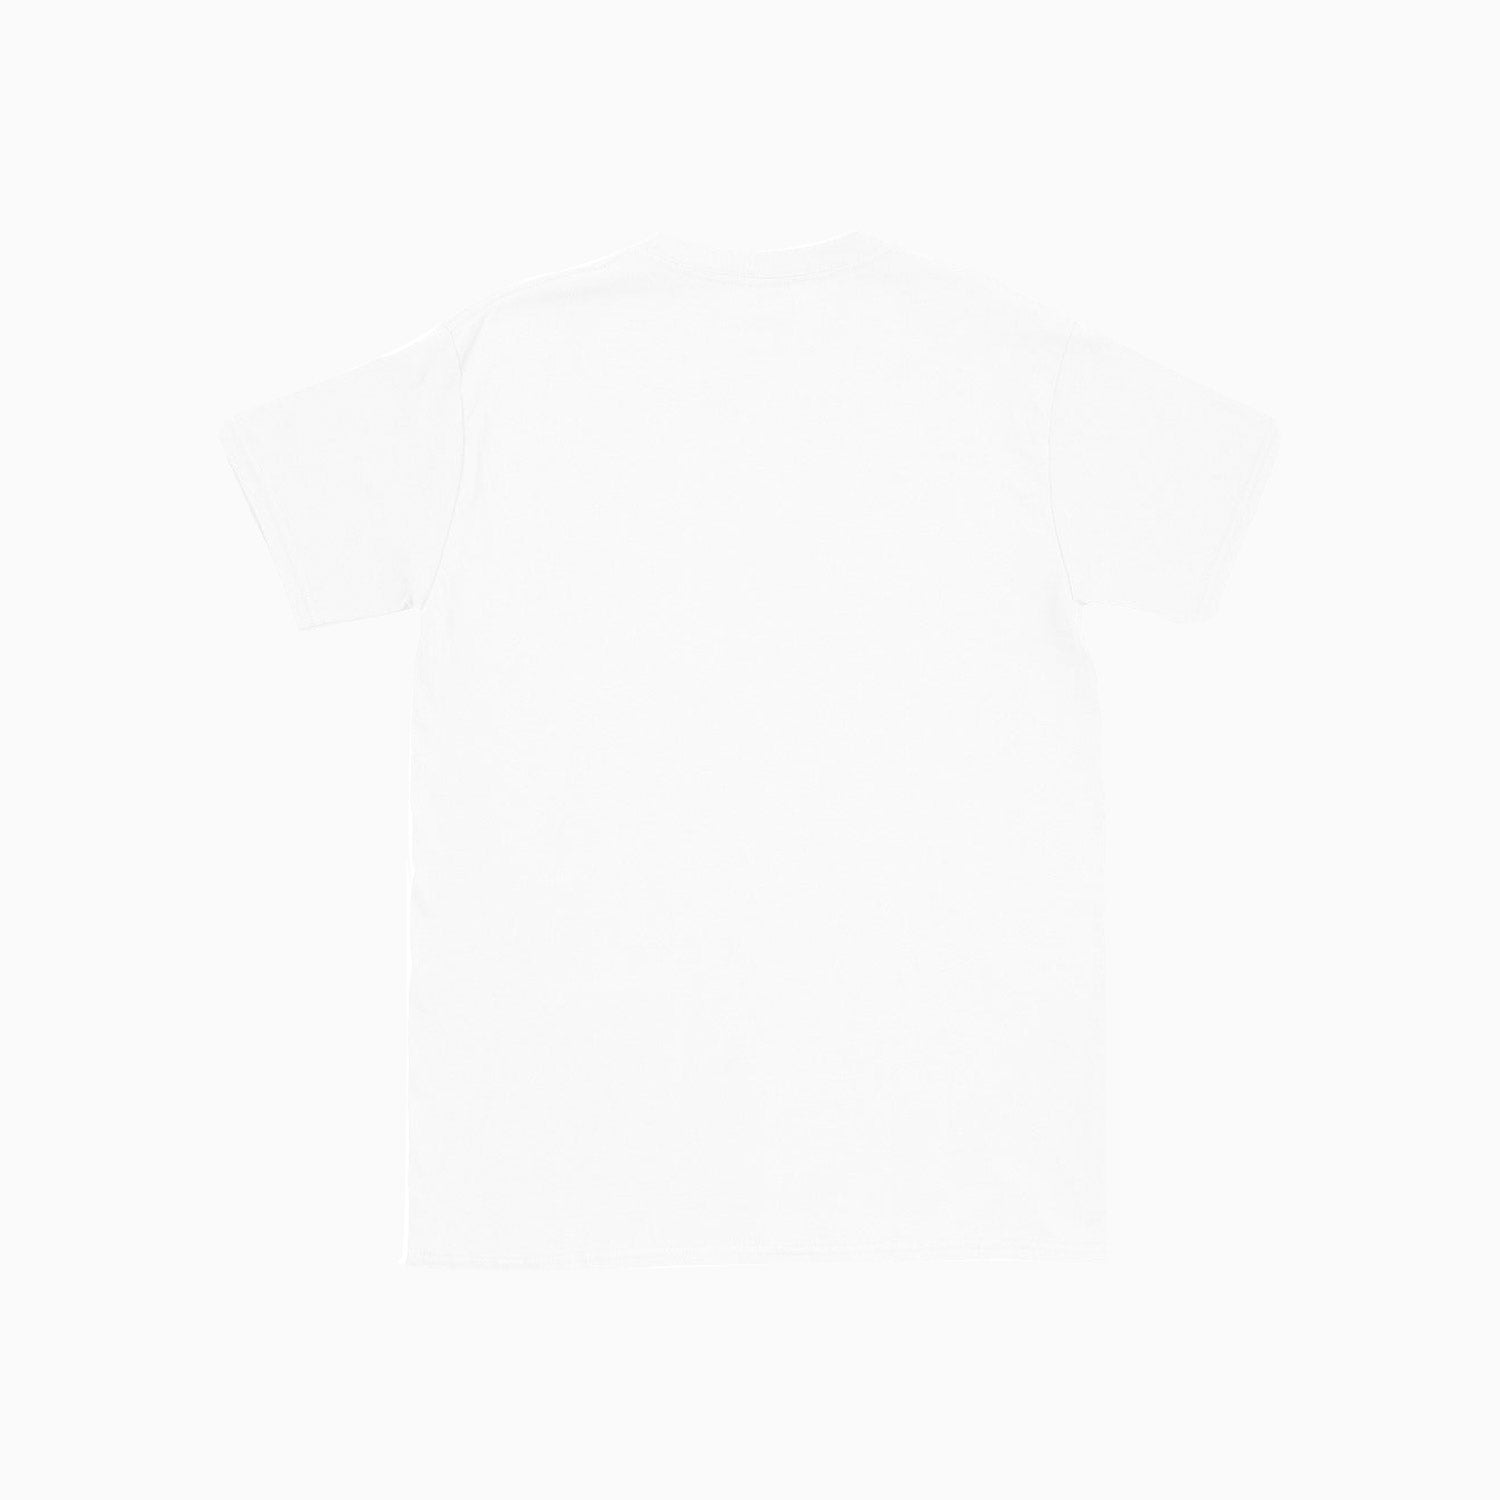 savar-mens-grid-printed-white-t-shirt-st204-100